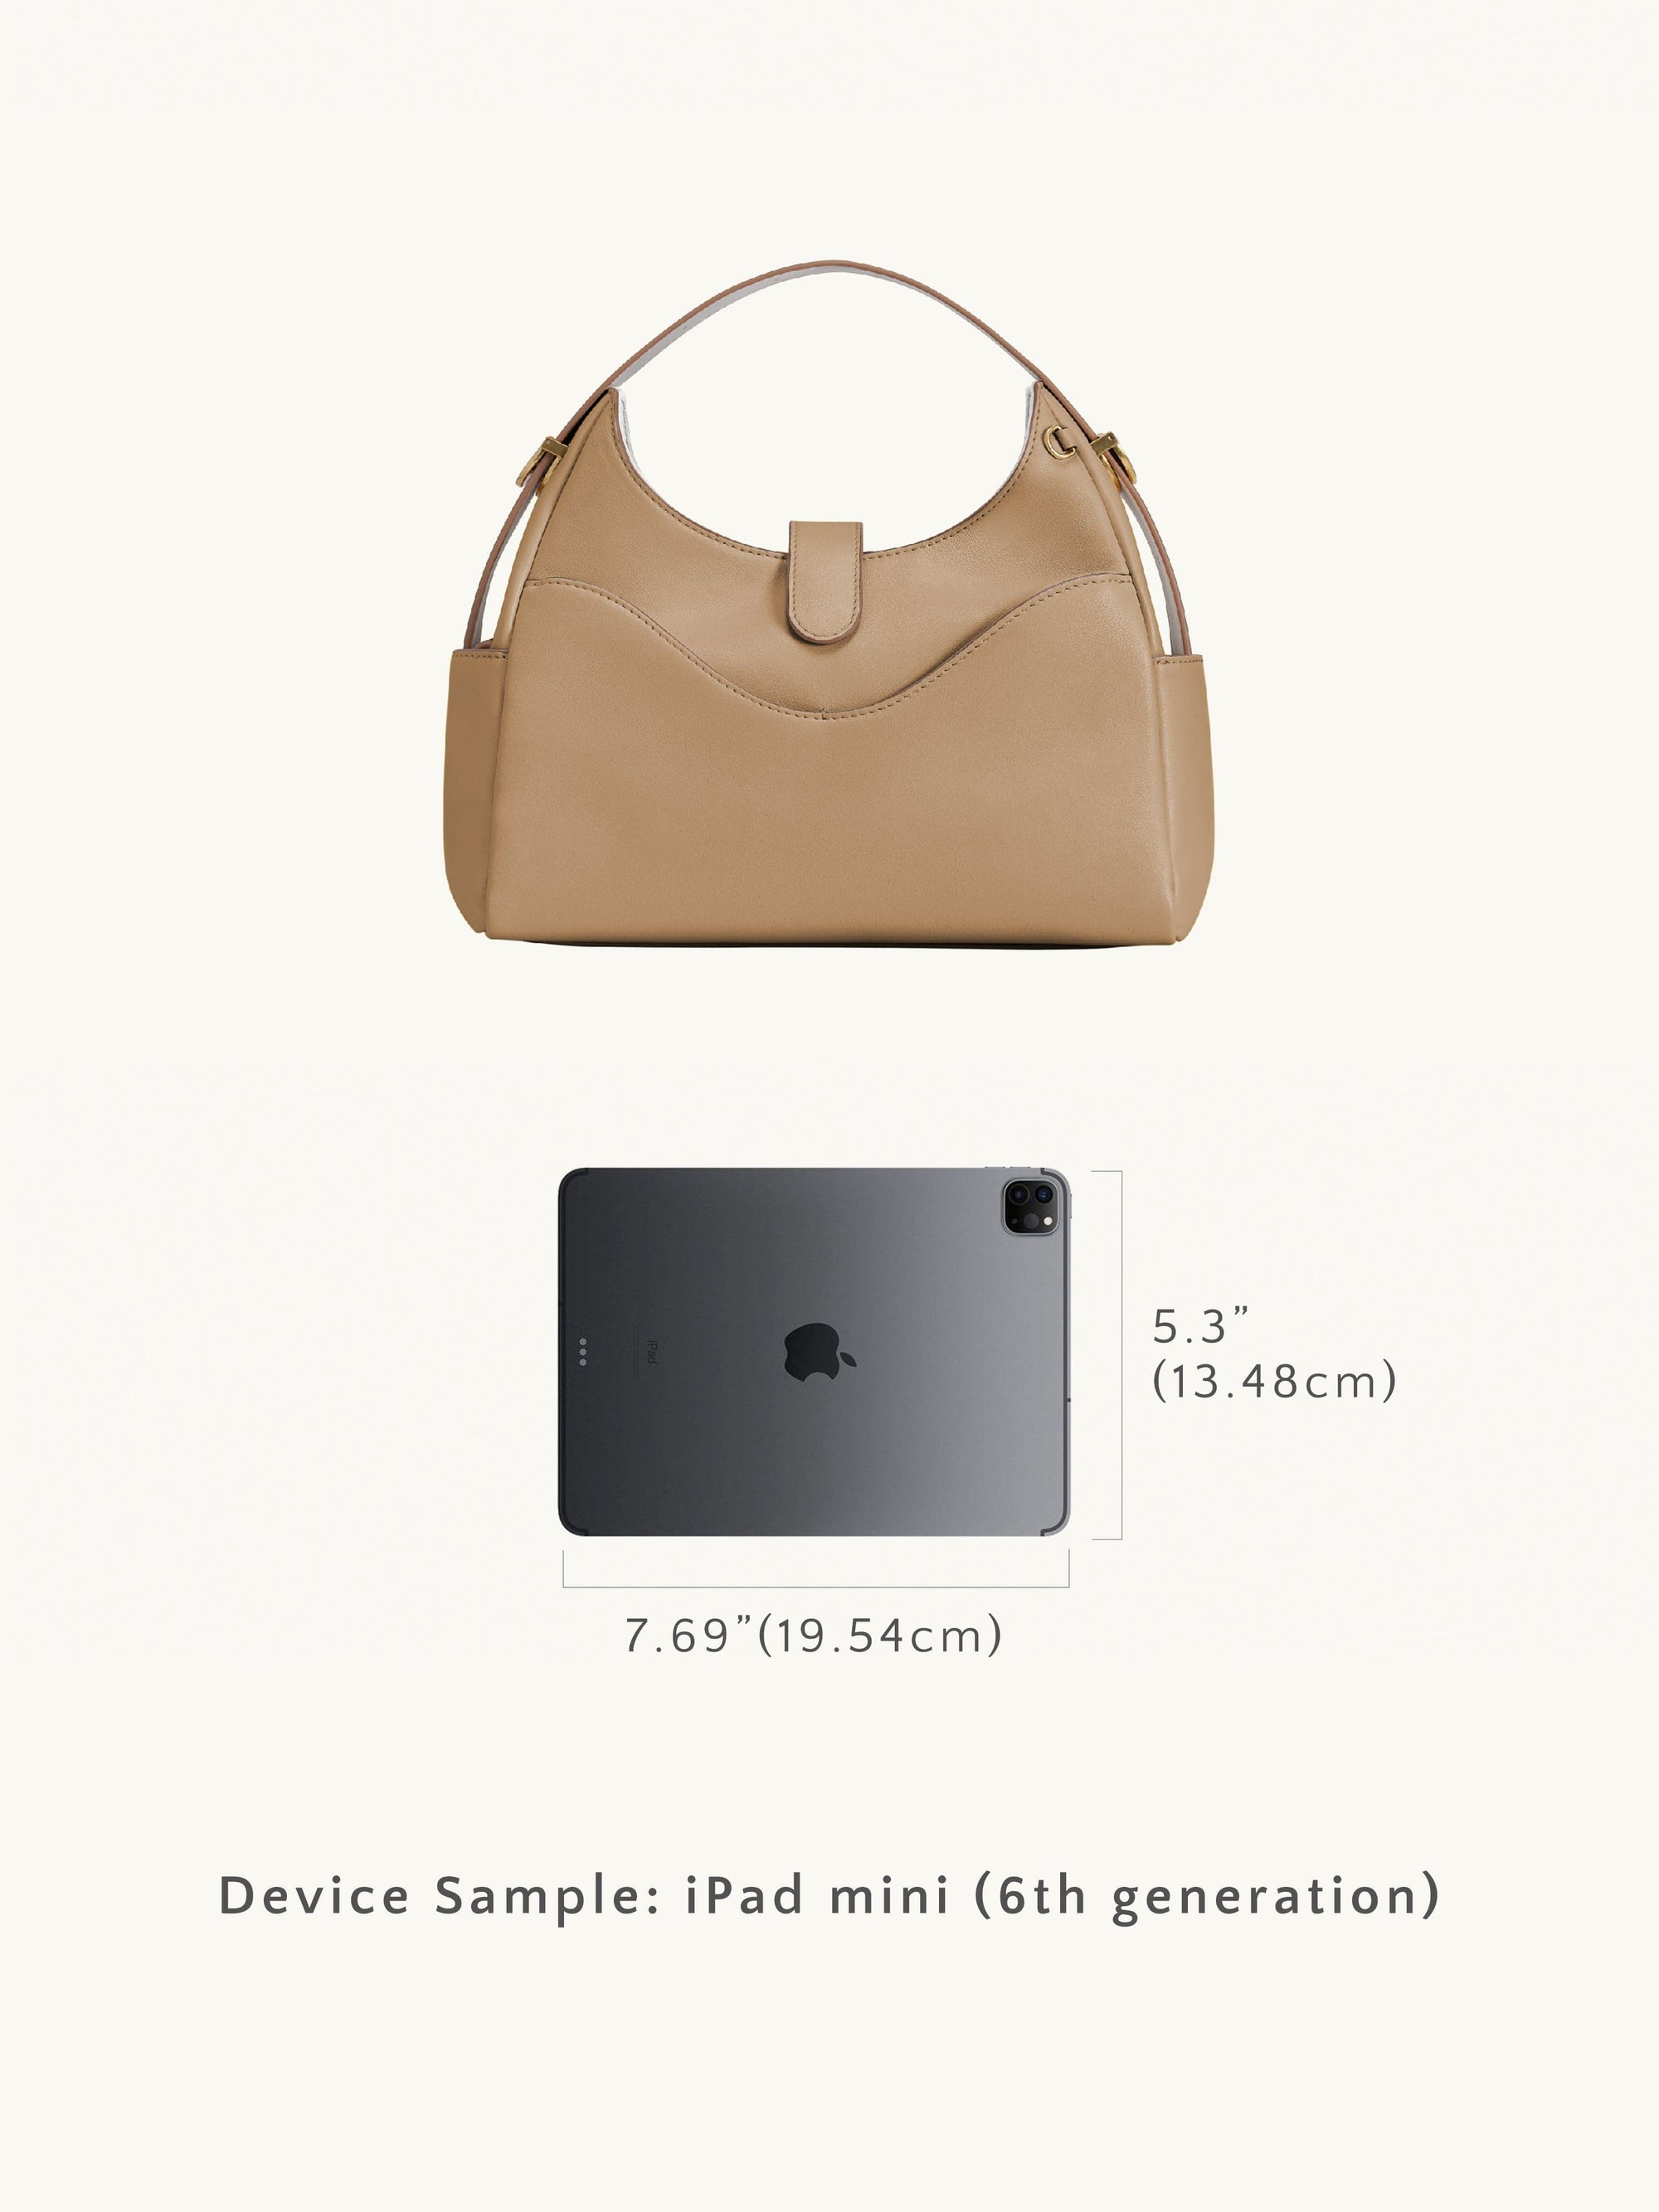 Delvaux Brillant Review inc size comparison (mini MM), Delvaux vs Hermes,  vintage bag & more! 